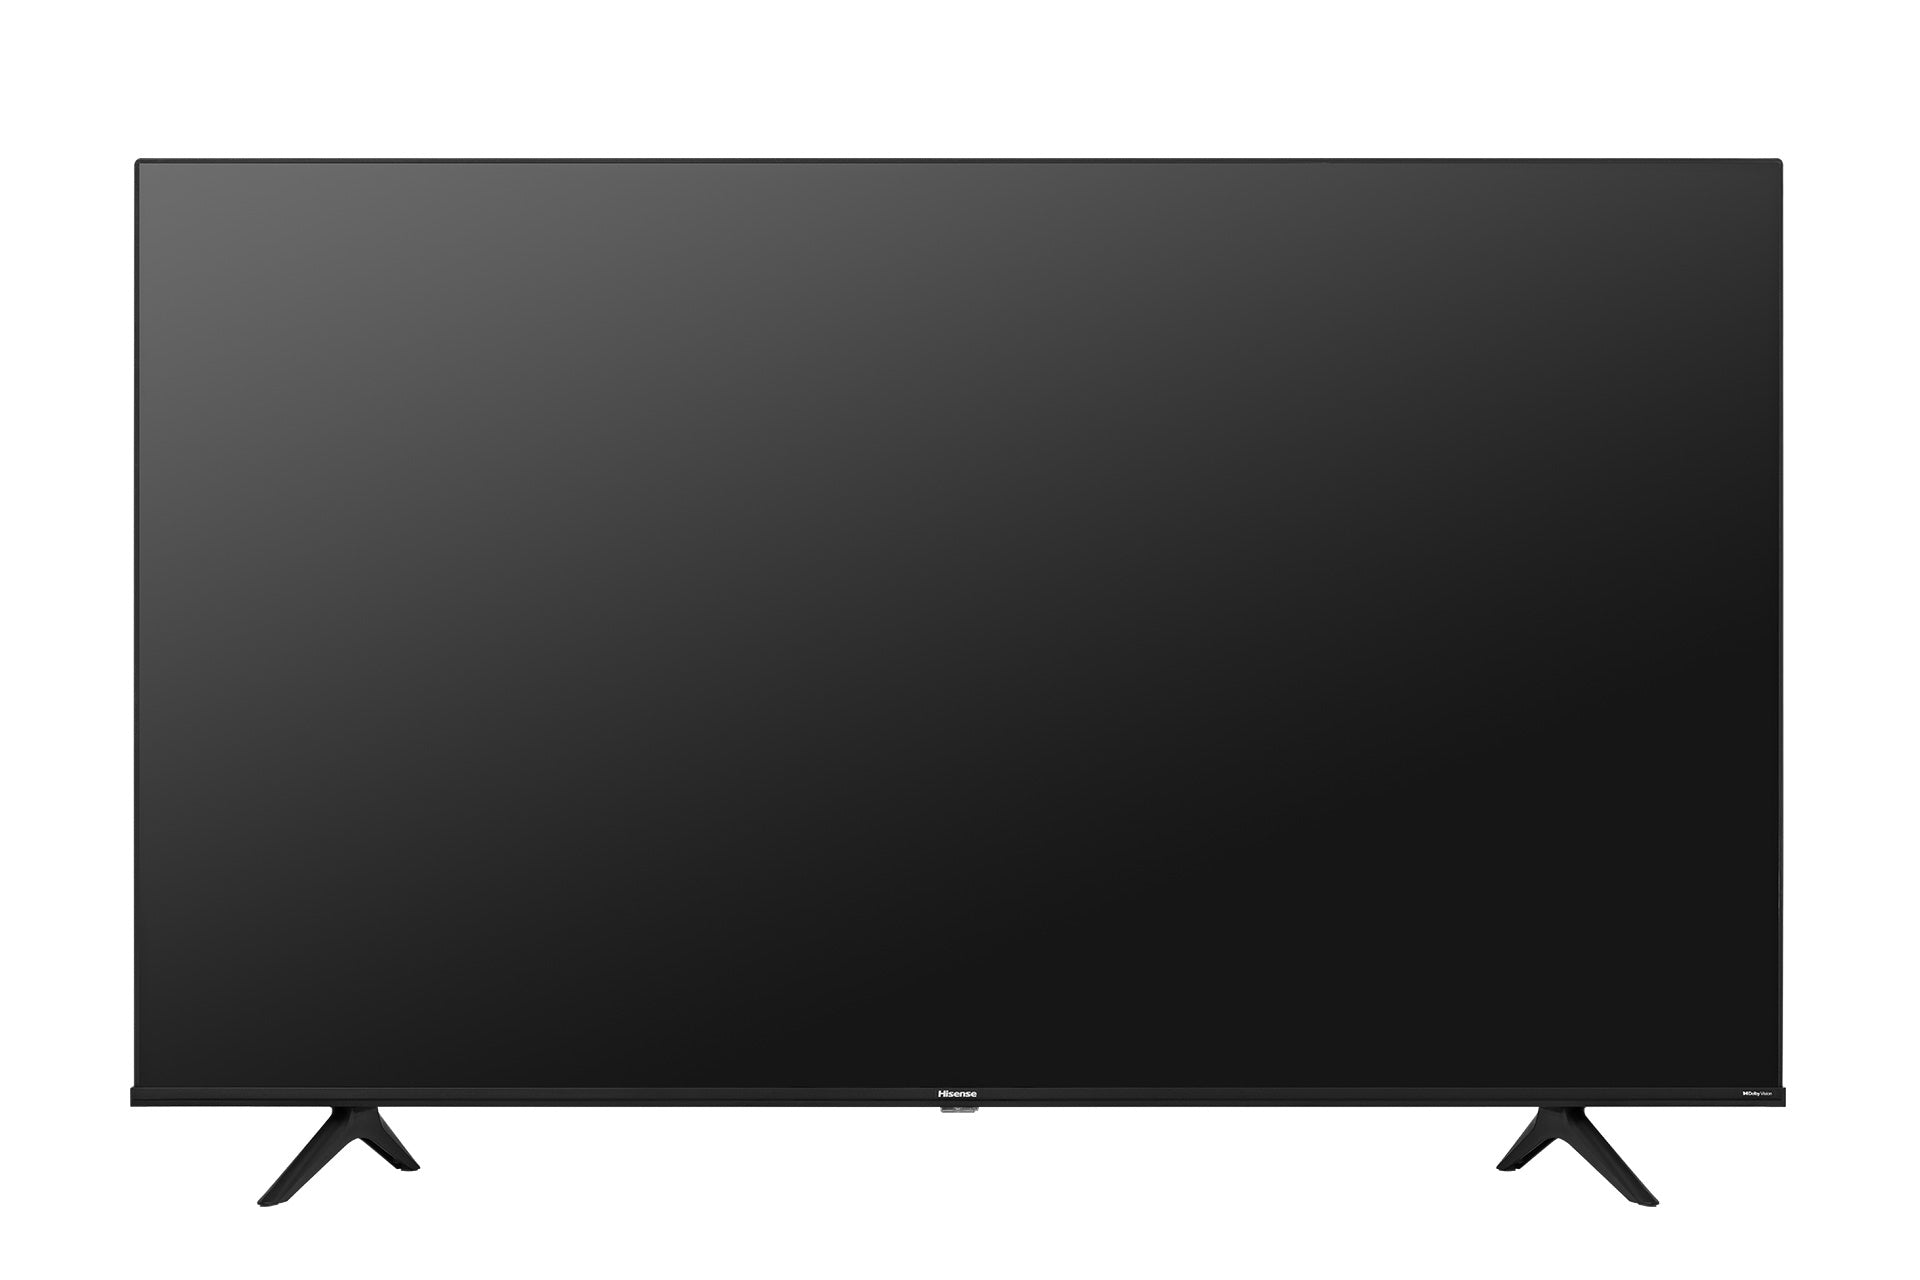 Pantalla Hisense Led Smart TV de 55 pulgadas 4K/Ultra HD 55a65hv con Vidaa